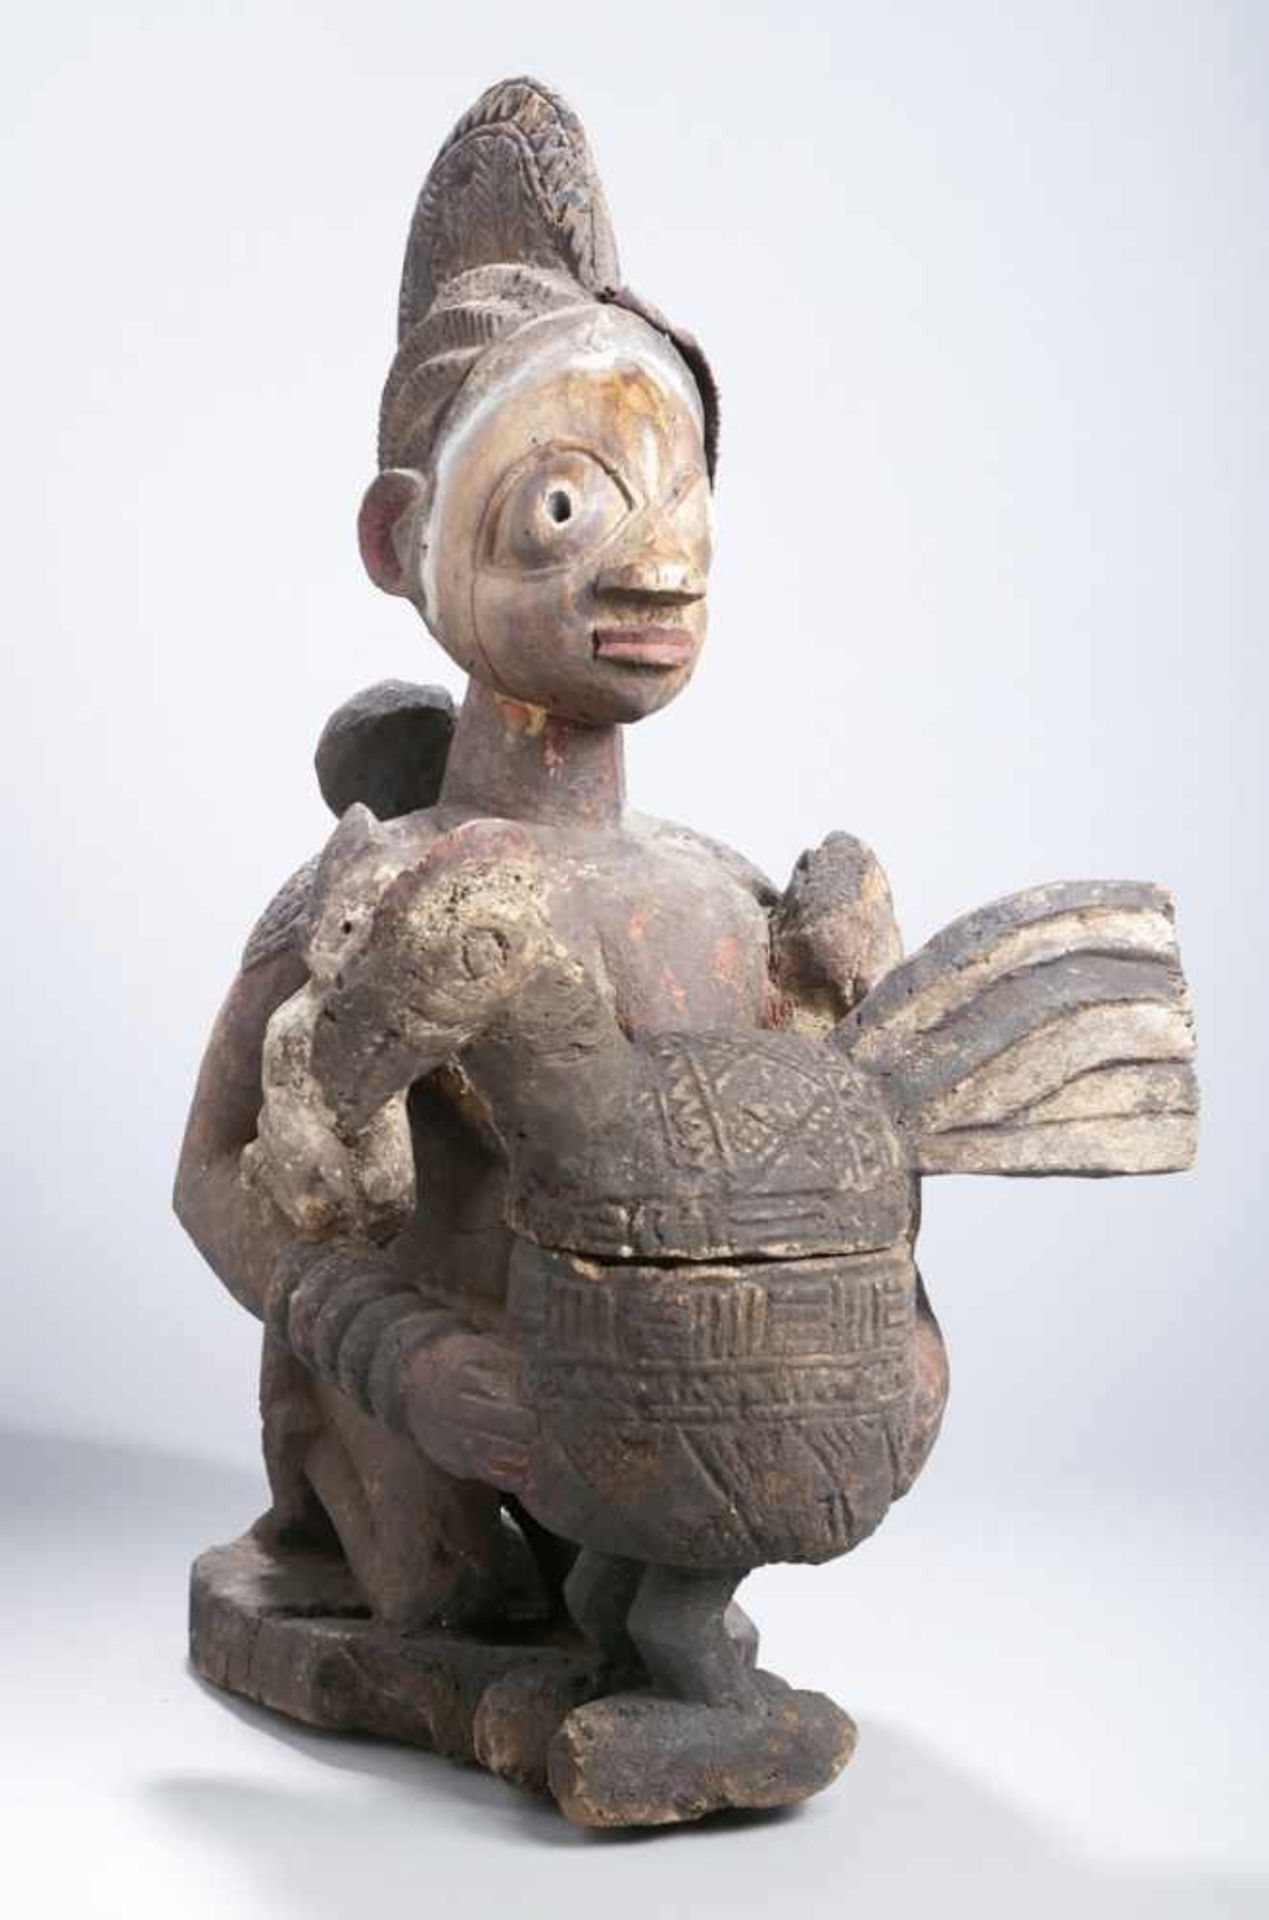 Mutter-Figur bzw. Schalenträgerin, Yoruba, Nigeria, auf Flachplinthe kniende, weibliche<